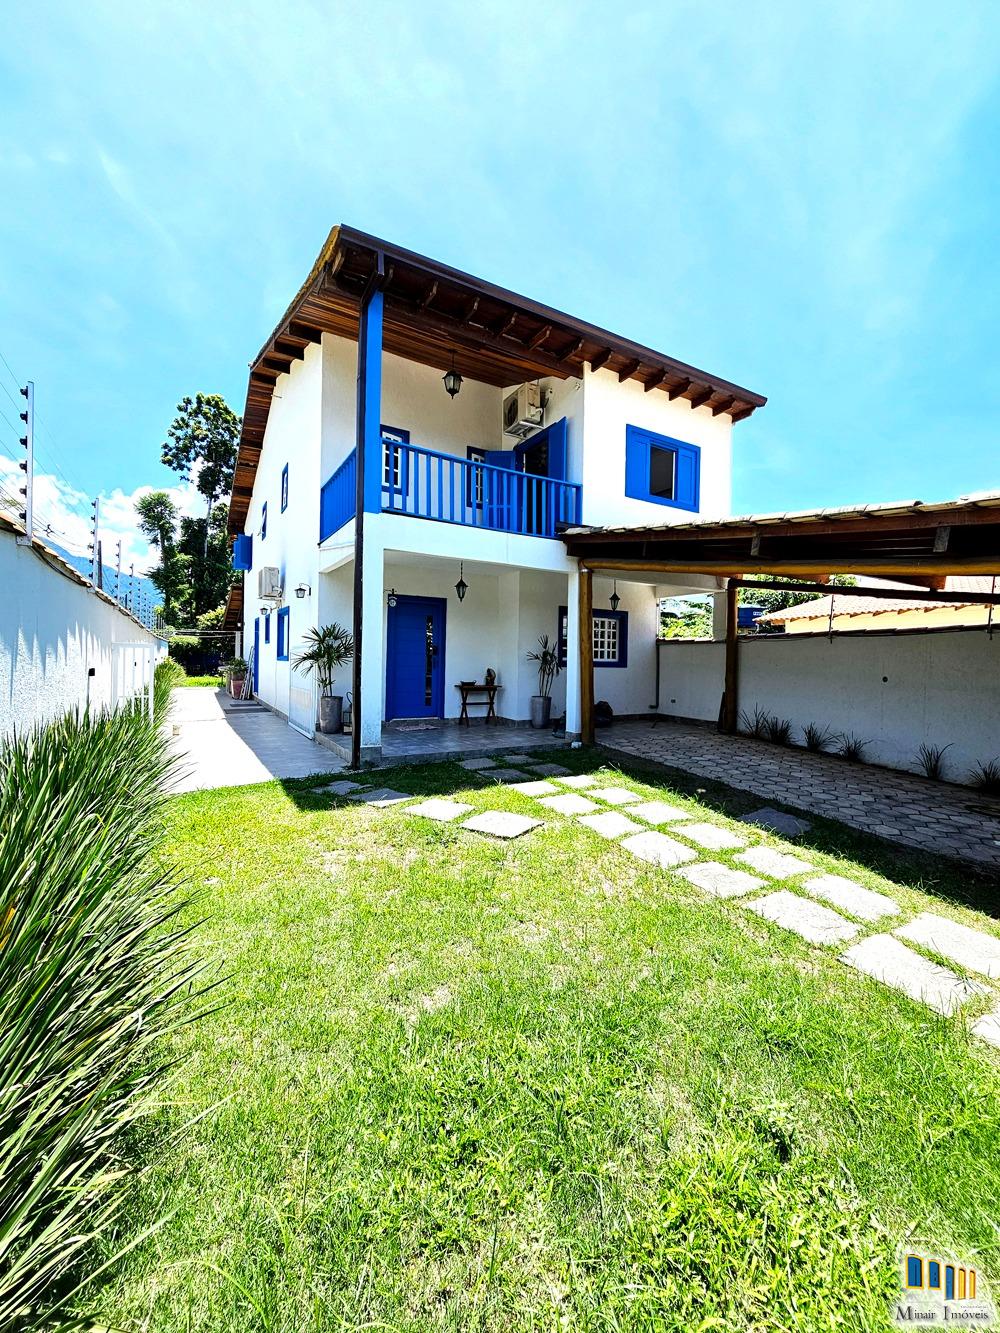 PCH 181 – Casa a venda em Paraty com frente para Rio Perequê-Açú